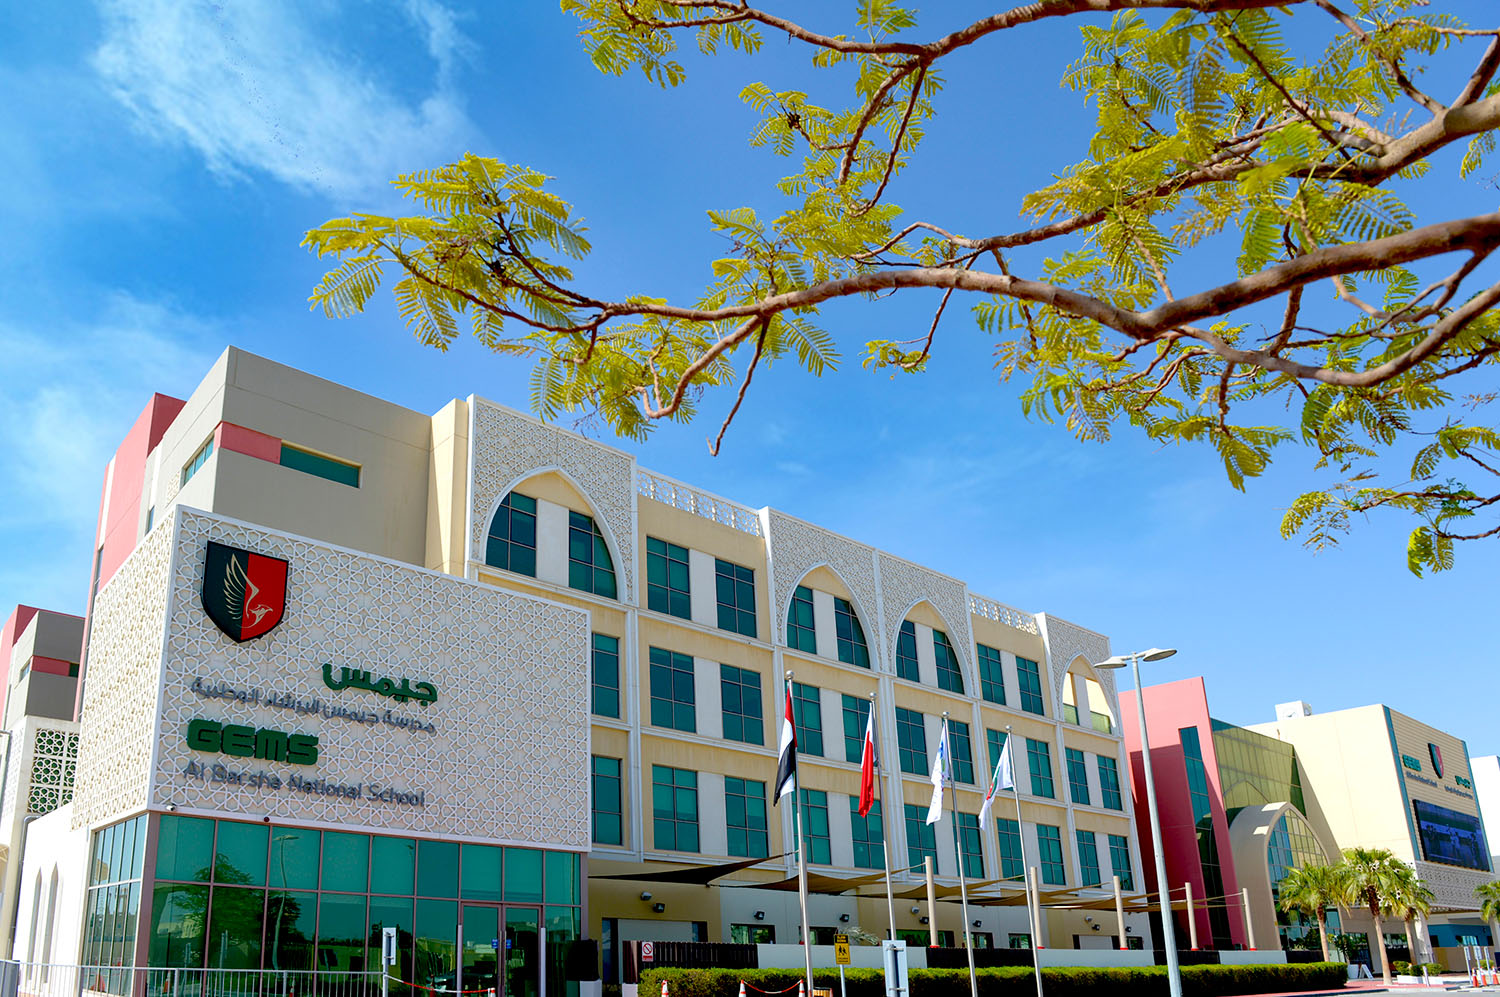 مدرسة جيمس البرشاء الوطنية - فرع دبي